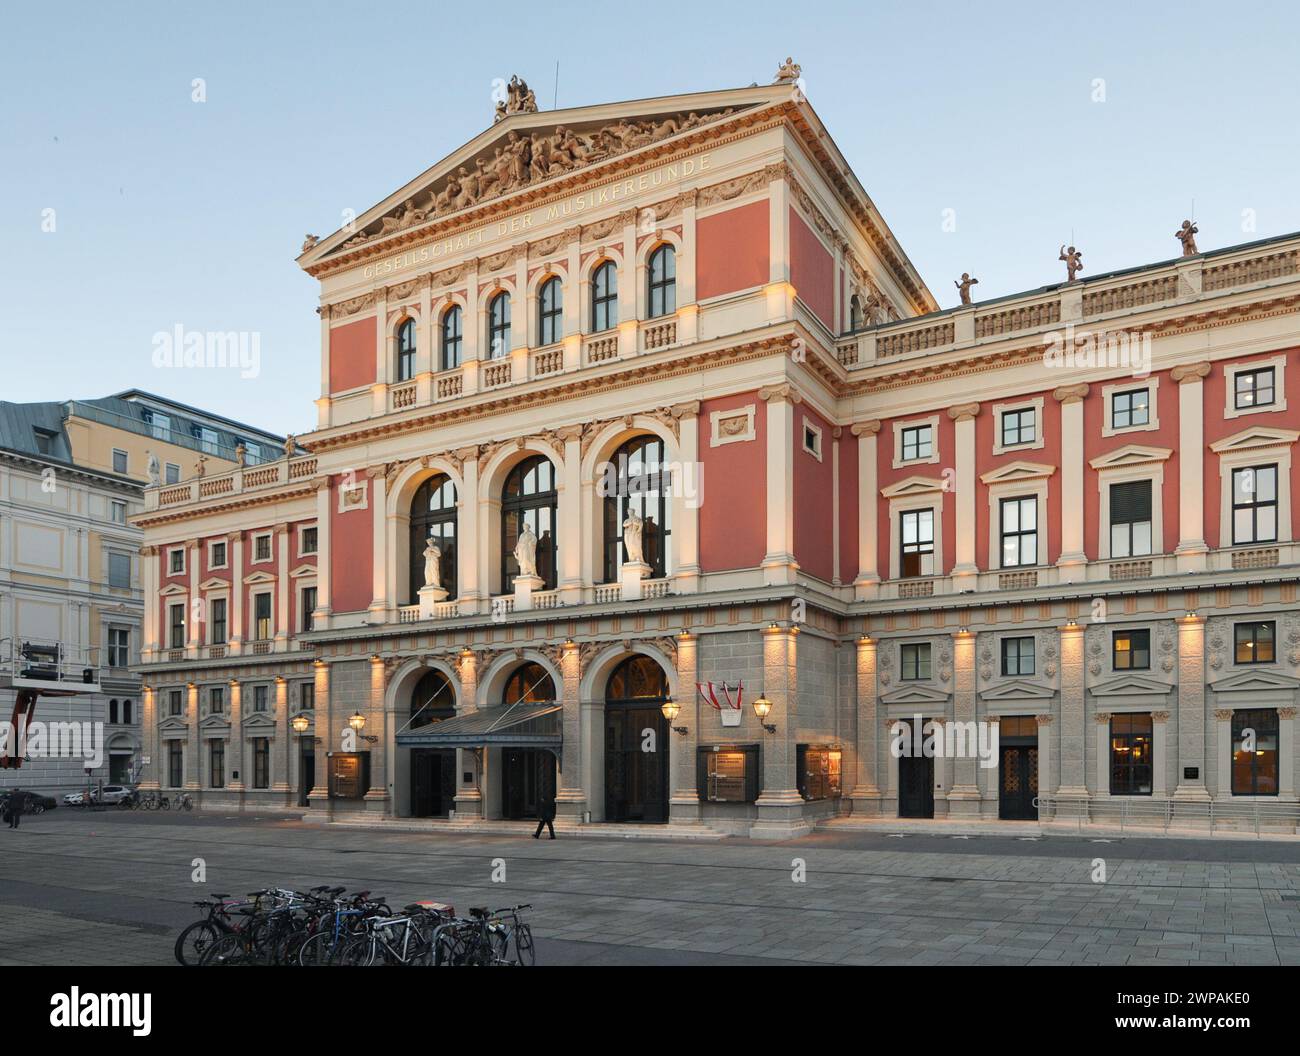 Die Fassade des Musikvereins in der Abenddämmerung. Neoklassizistischer Konzertsaal in Wien. Das Gebäude im historischen Stil mit Säulen, Giebel und Reliefs. Stockfoto